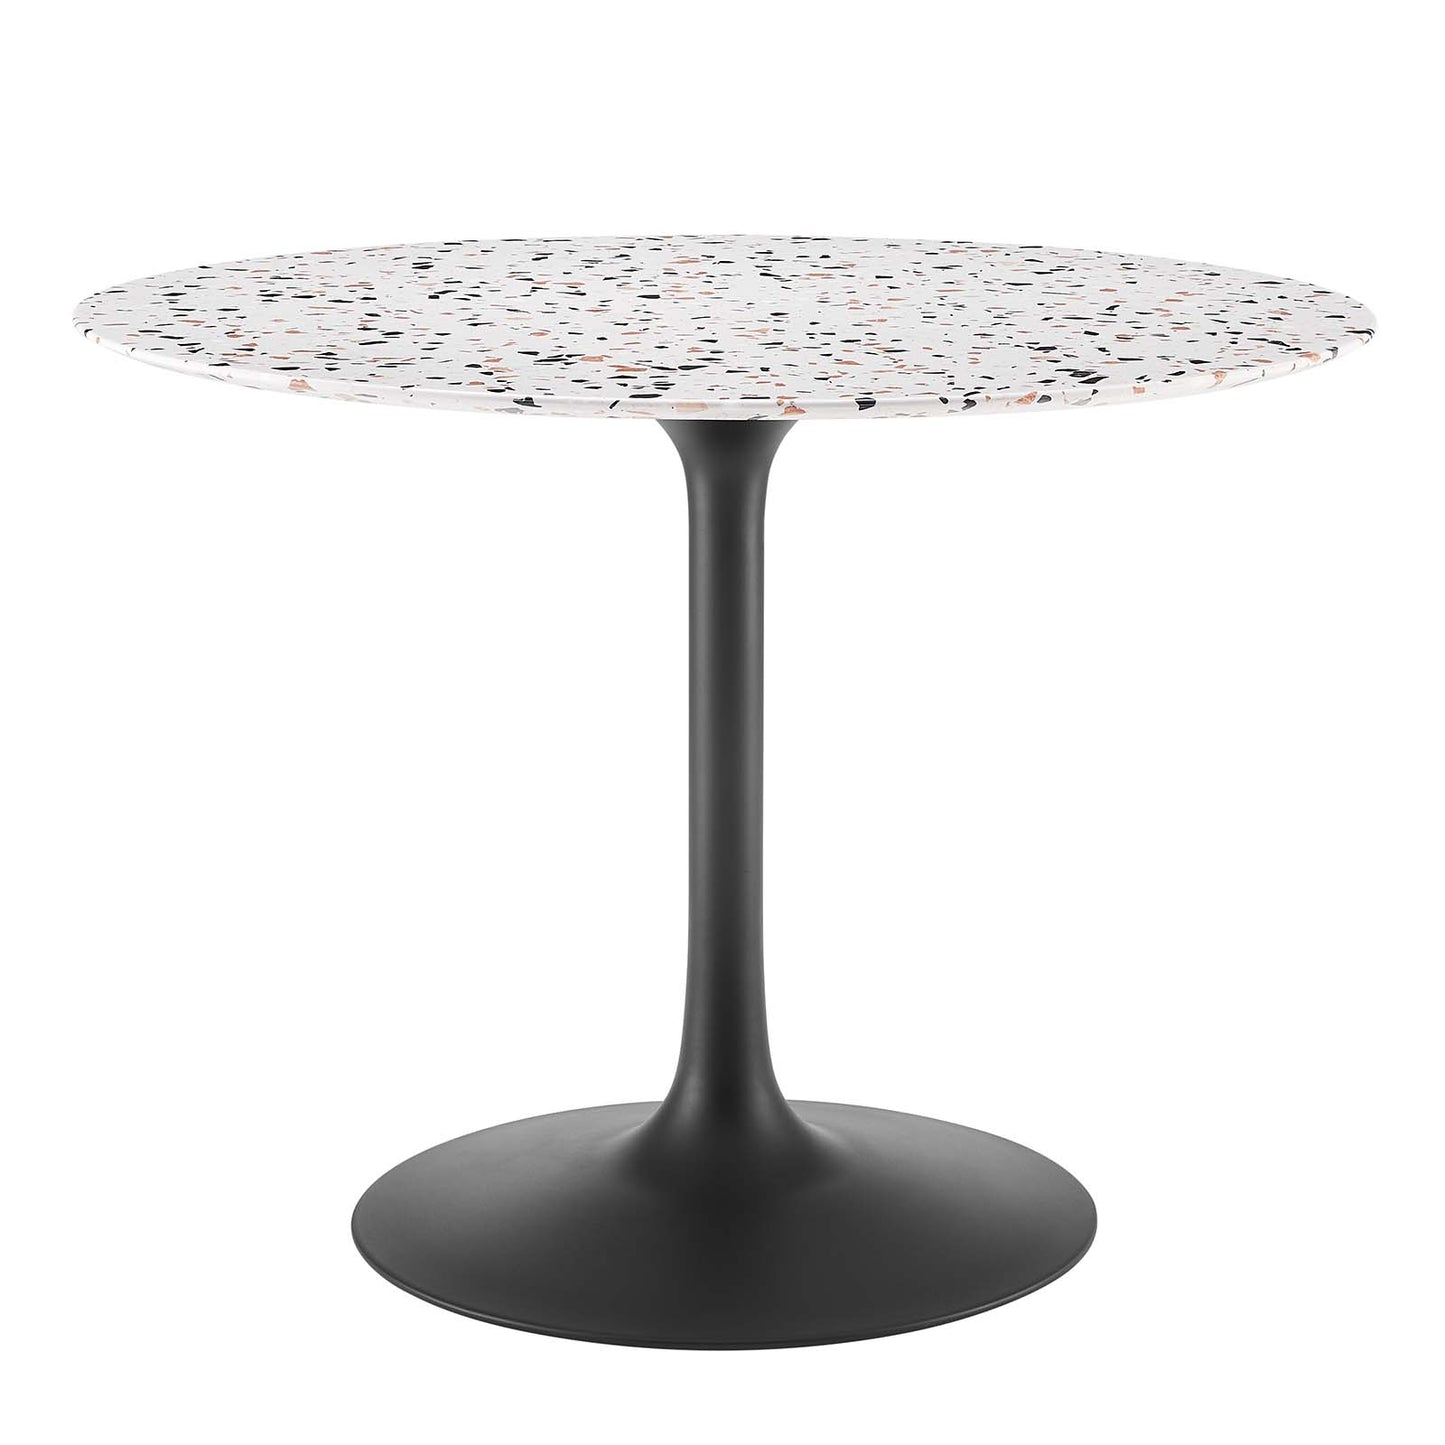 Lippa 40" Round Terrazzo Dining Table Black White EEI-5725-BLK-WHI